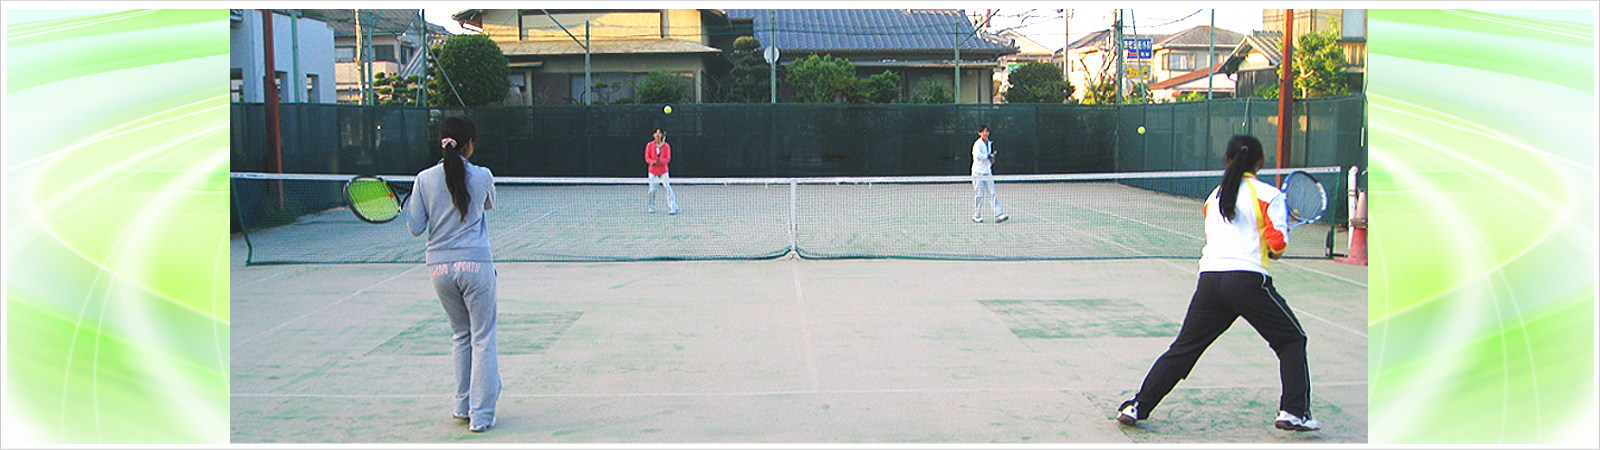 大園テニスワールド|三重県津市|誰もが無理せずテニスをいつまでも楽しめるように導きます